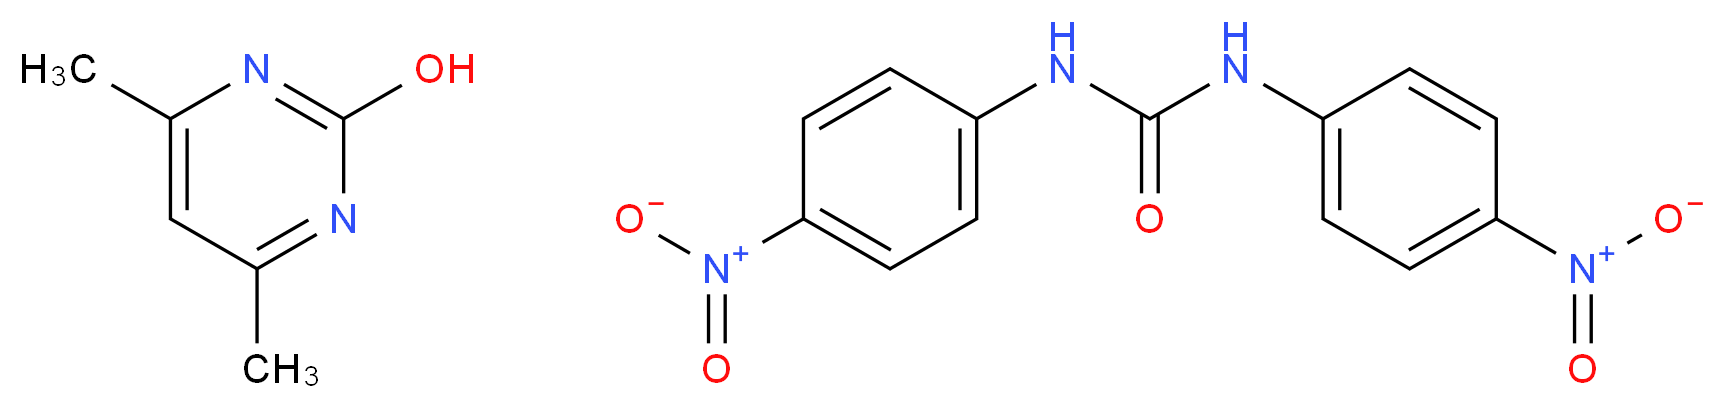 330-95-0 molecular structure